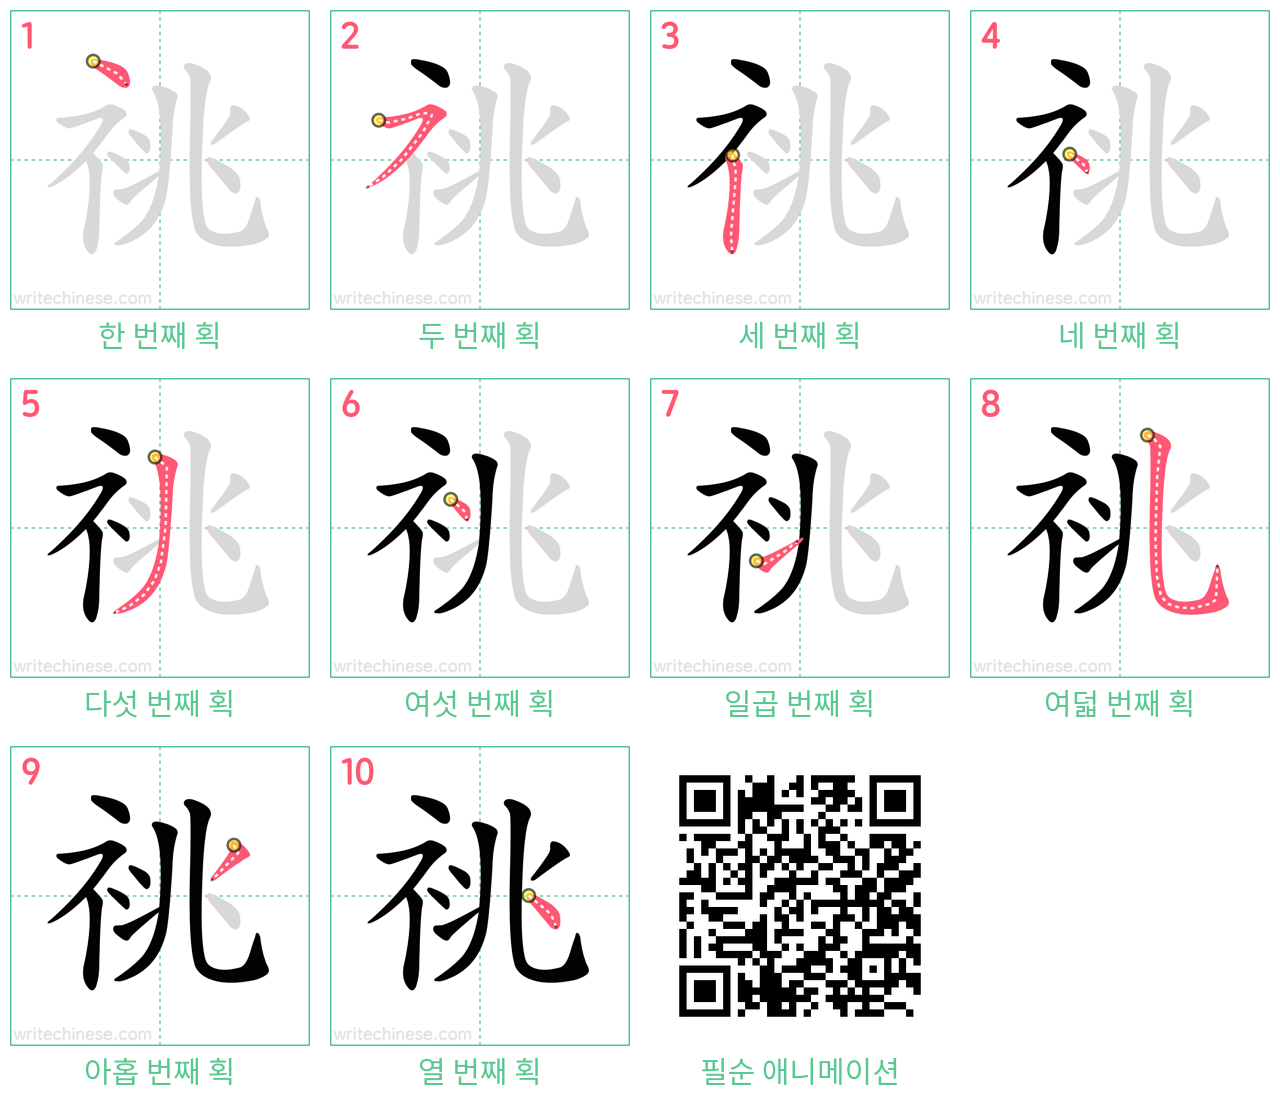 祧 step-by-step stroke order diagrams